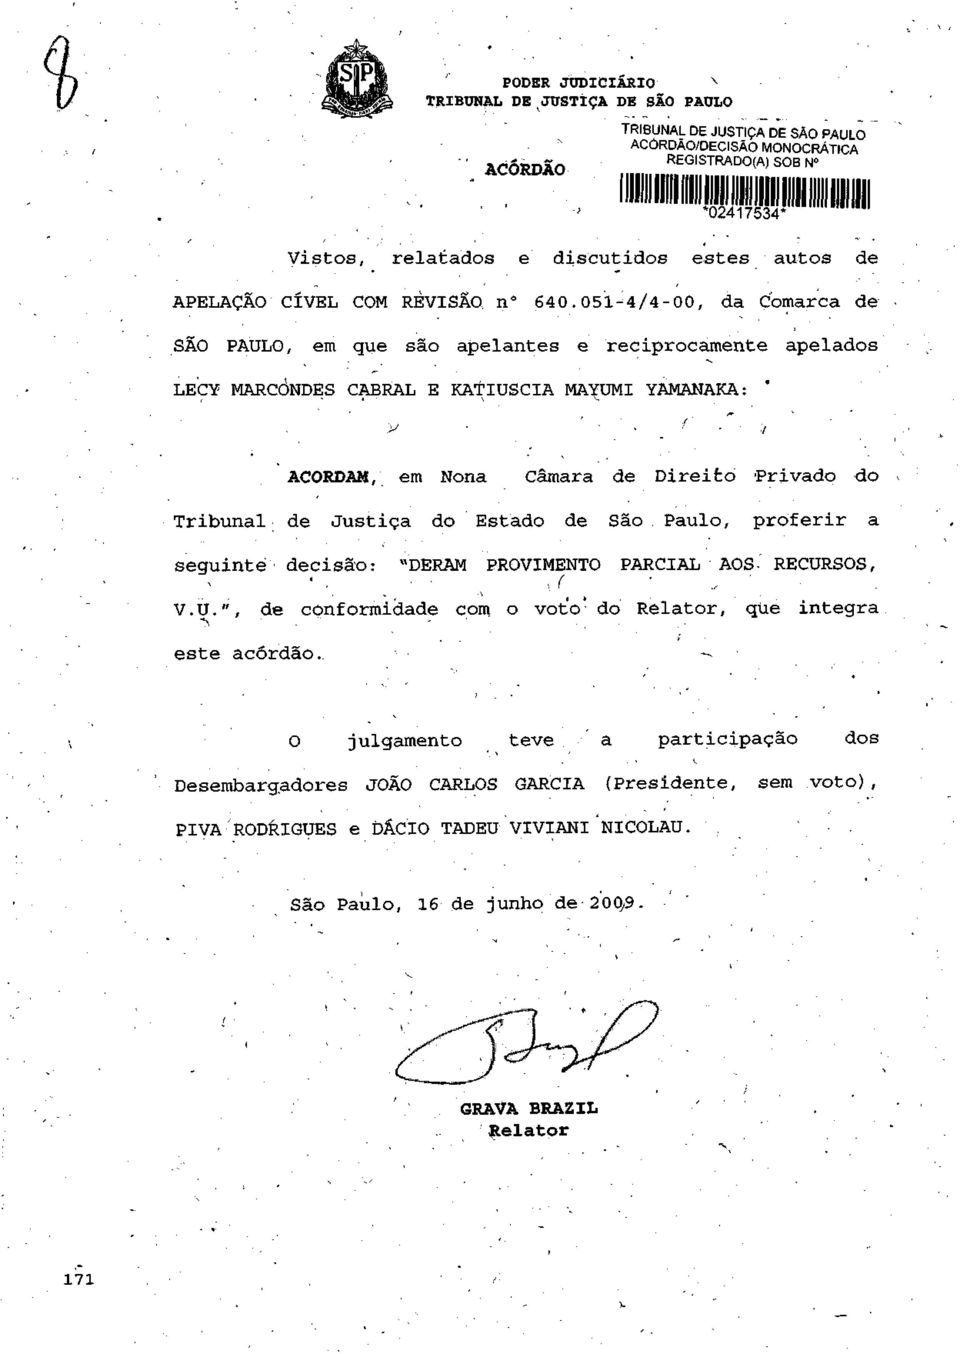 ACORDAM, em Nona Câmara de Direito Privado do Tribunal de Justiça do Estado de São Paulo, proferir a seguinte decisão: "DERAM PROVIMENTO PARCIAL AOS-' RECUR